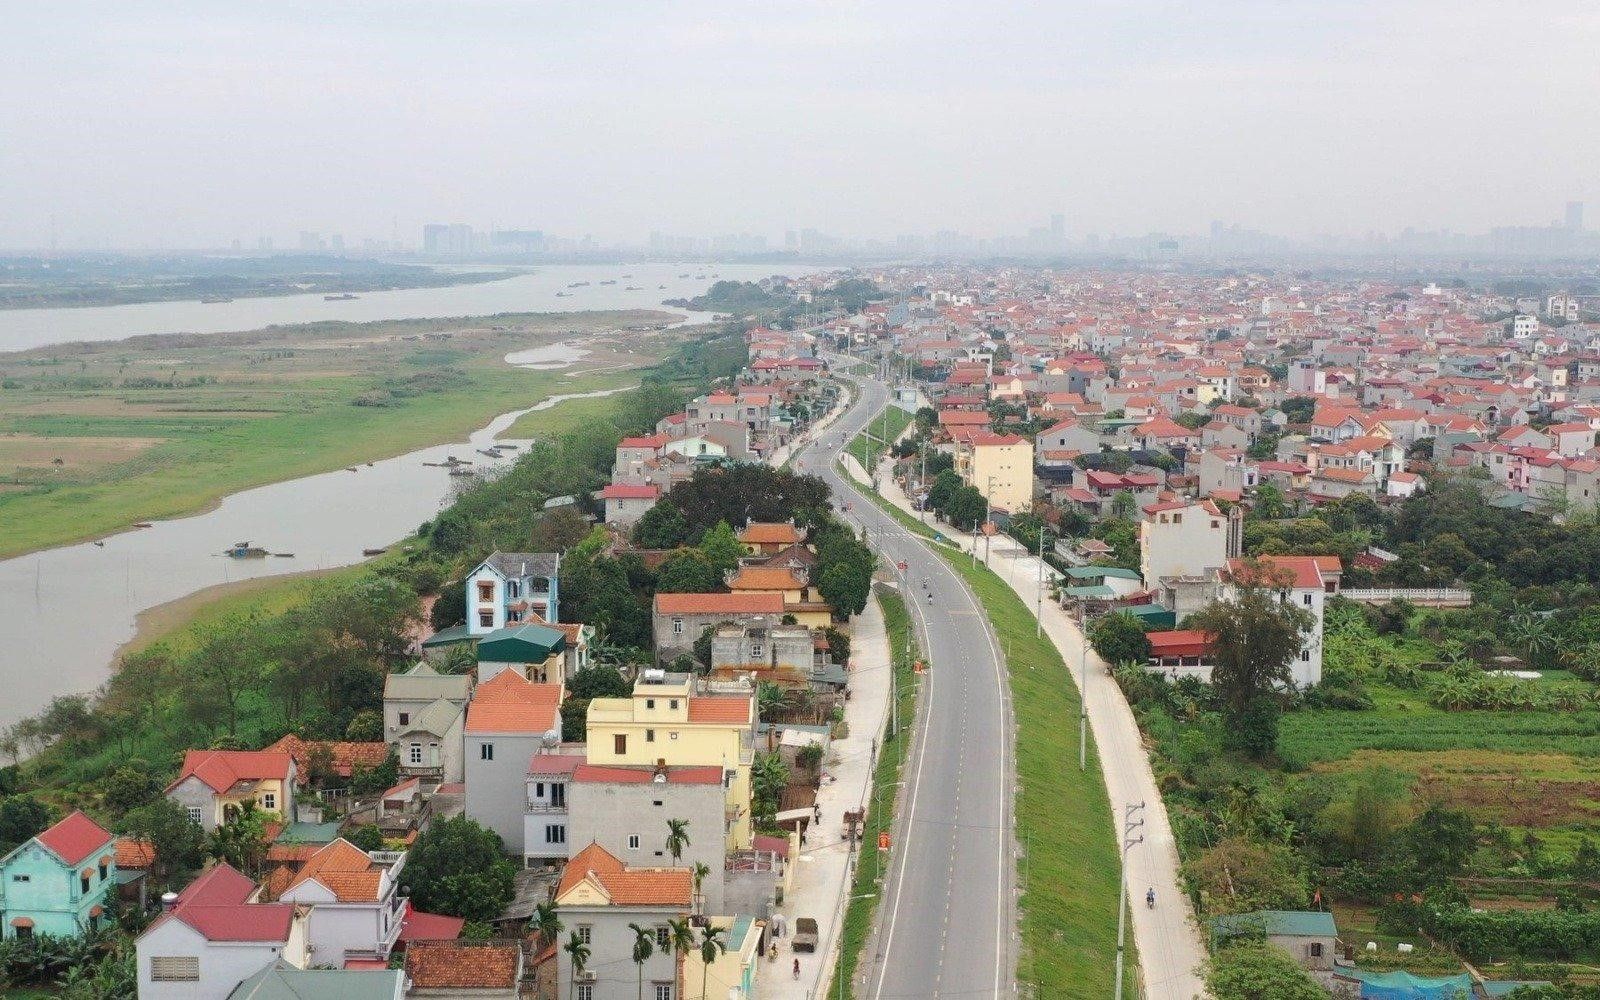 Giá bán nhà đất tại xã Đại Đồng, huyện Thạch Thất hiện là bao nhiêu?